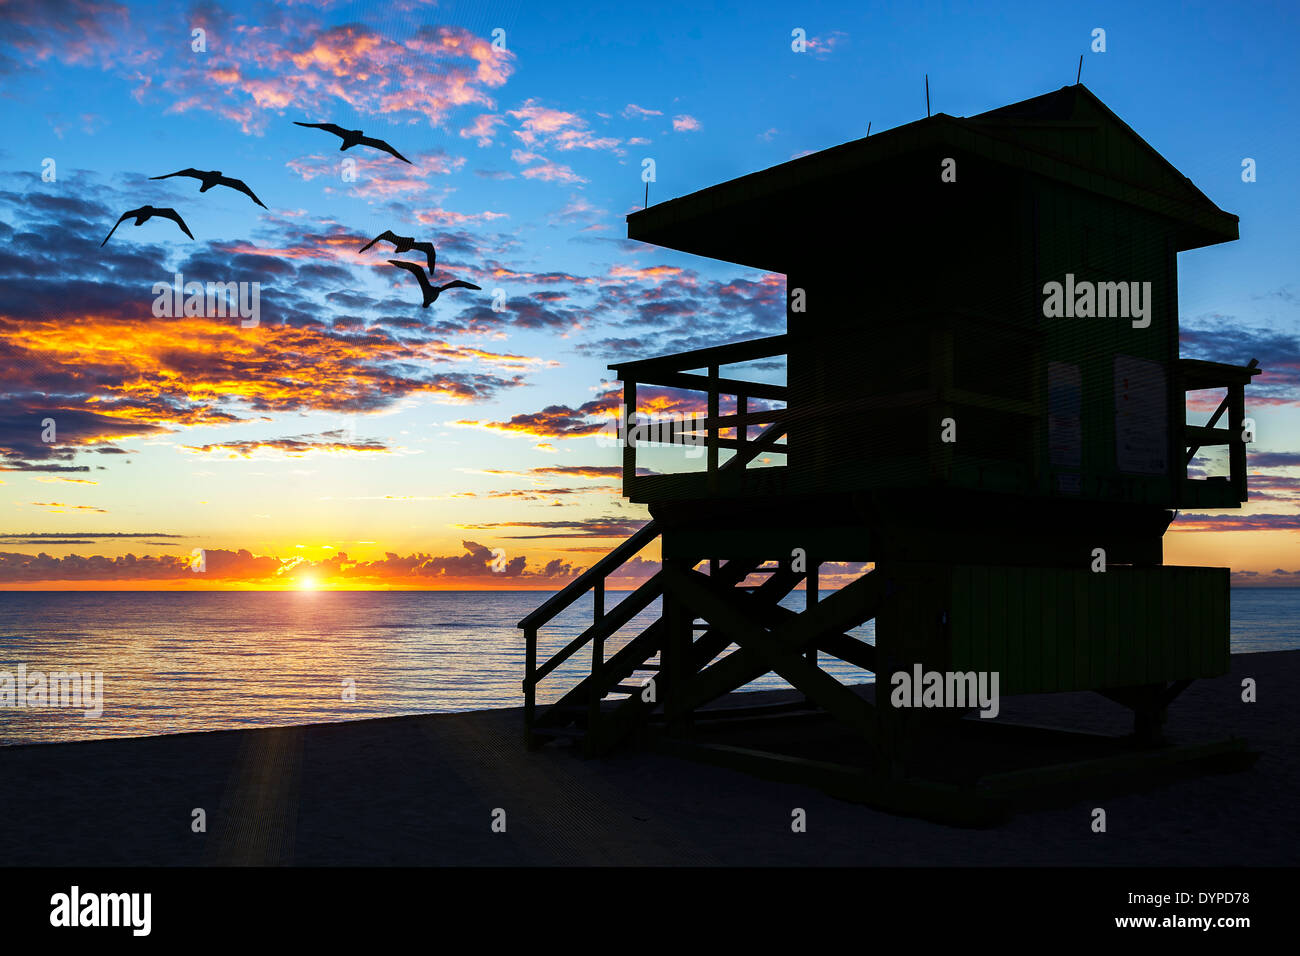 Miami South Beach et lifeguard tower au lever du soleil, USA Banque D'Images